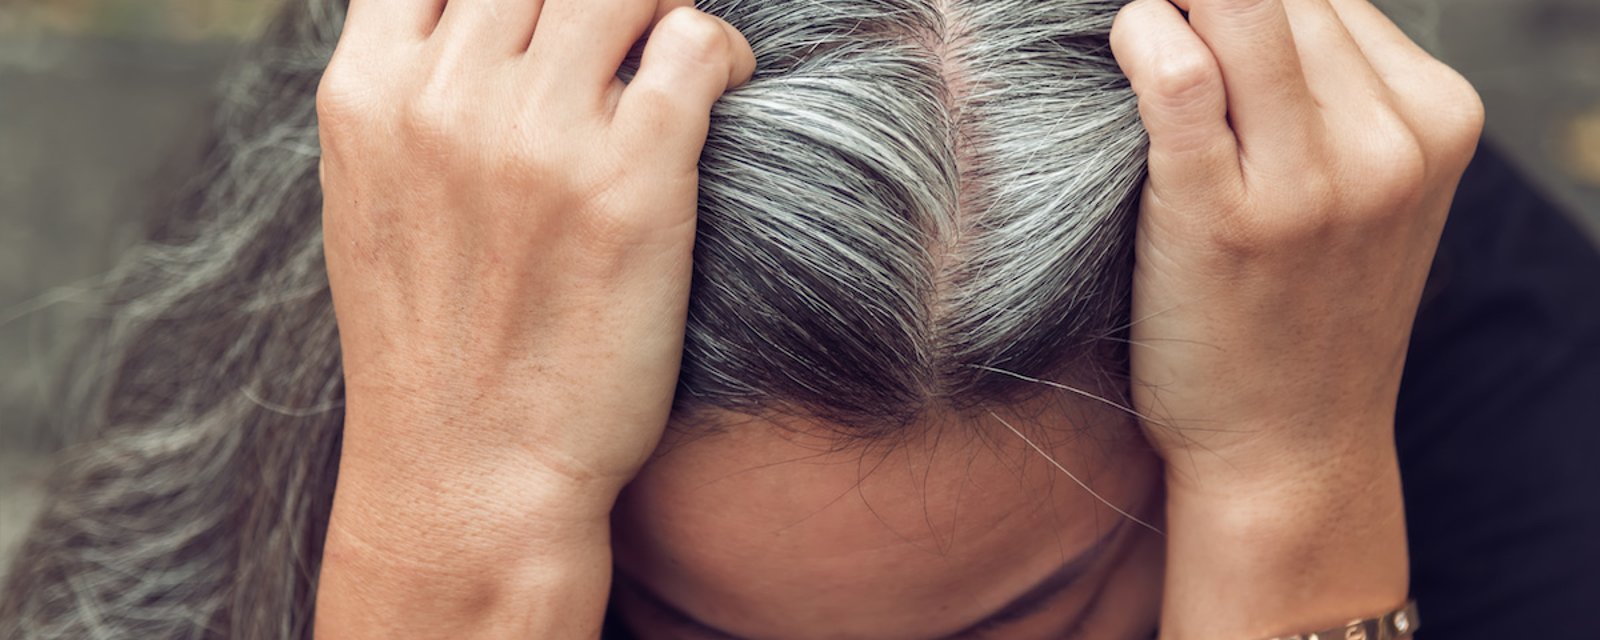 Ce n’est pas un mythe! Le stress favorise les cheveux blancs, selon la science.